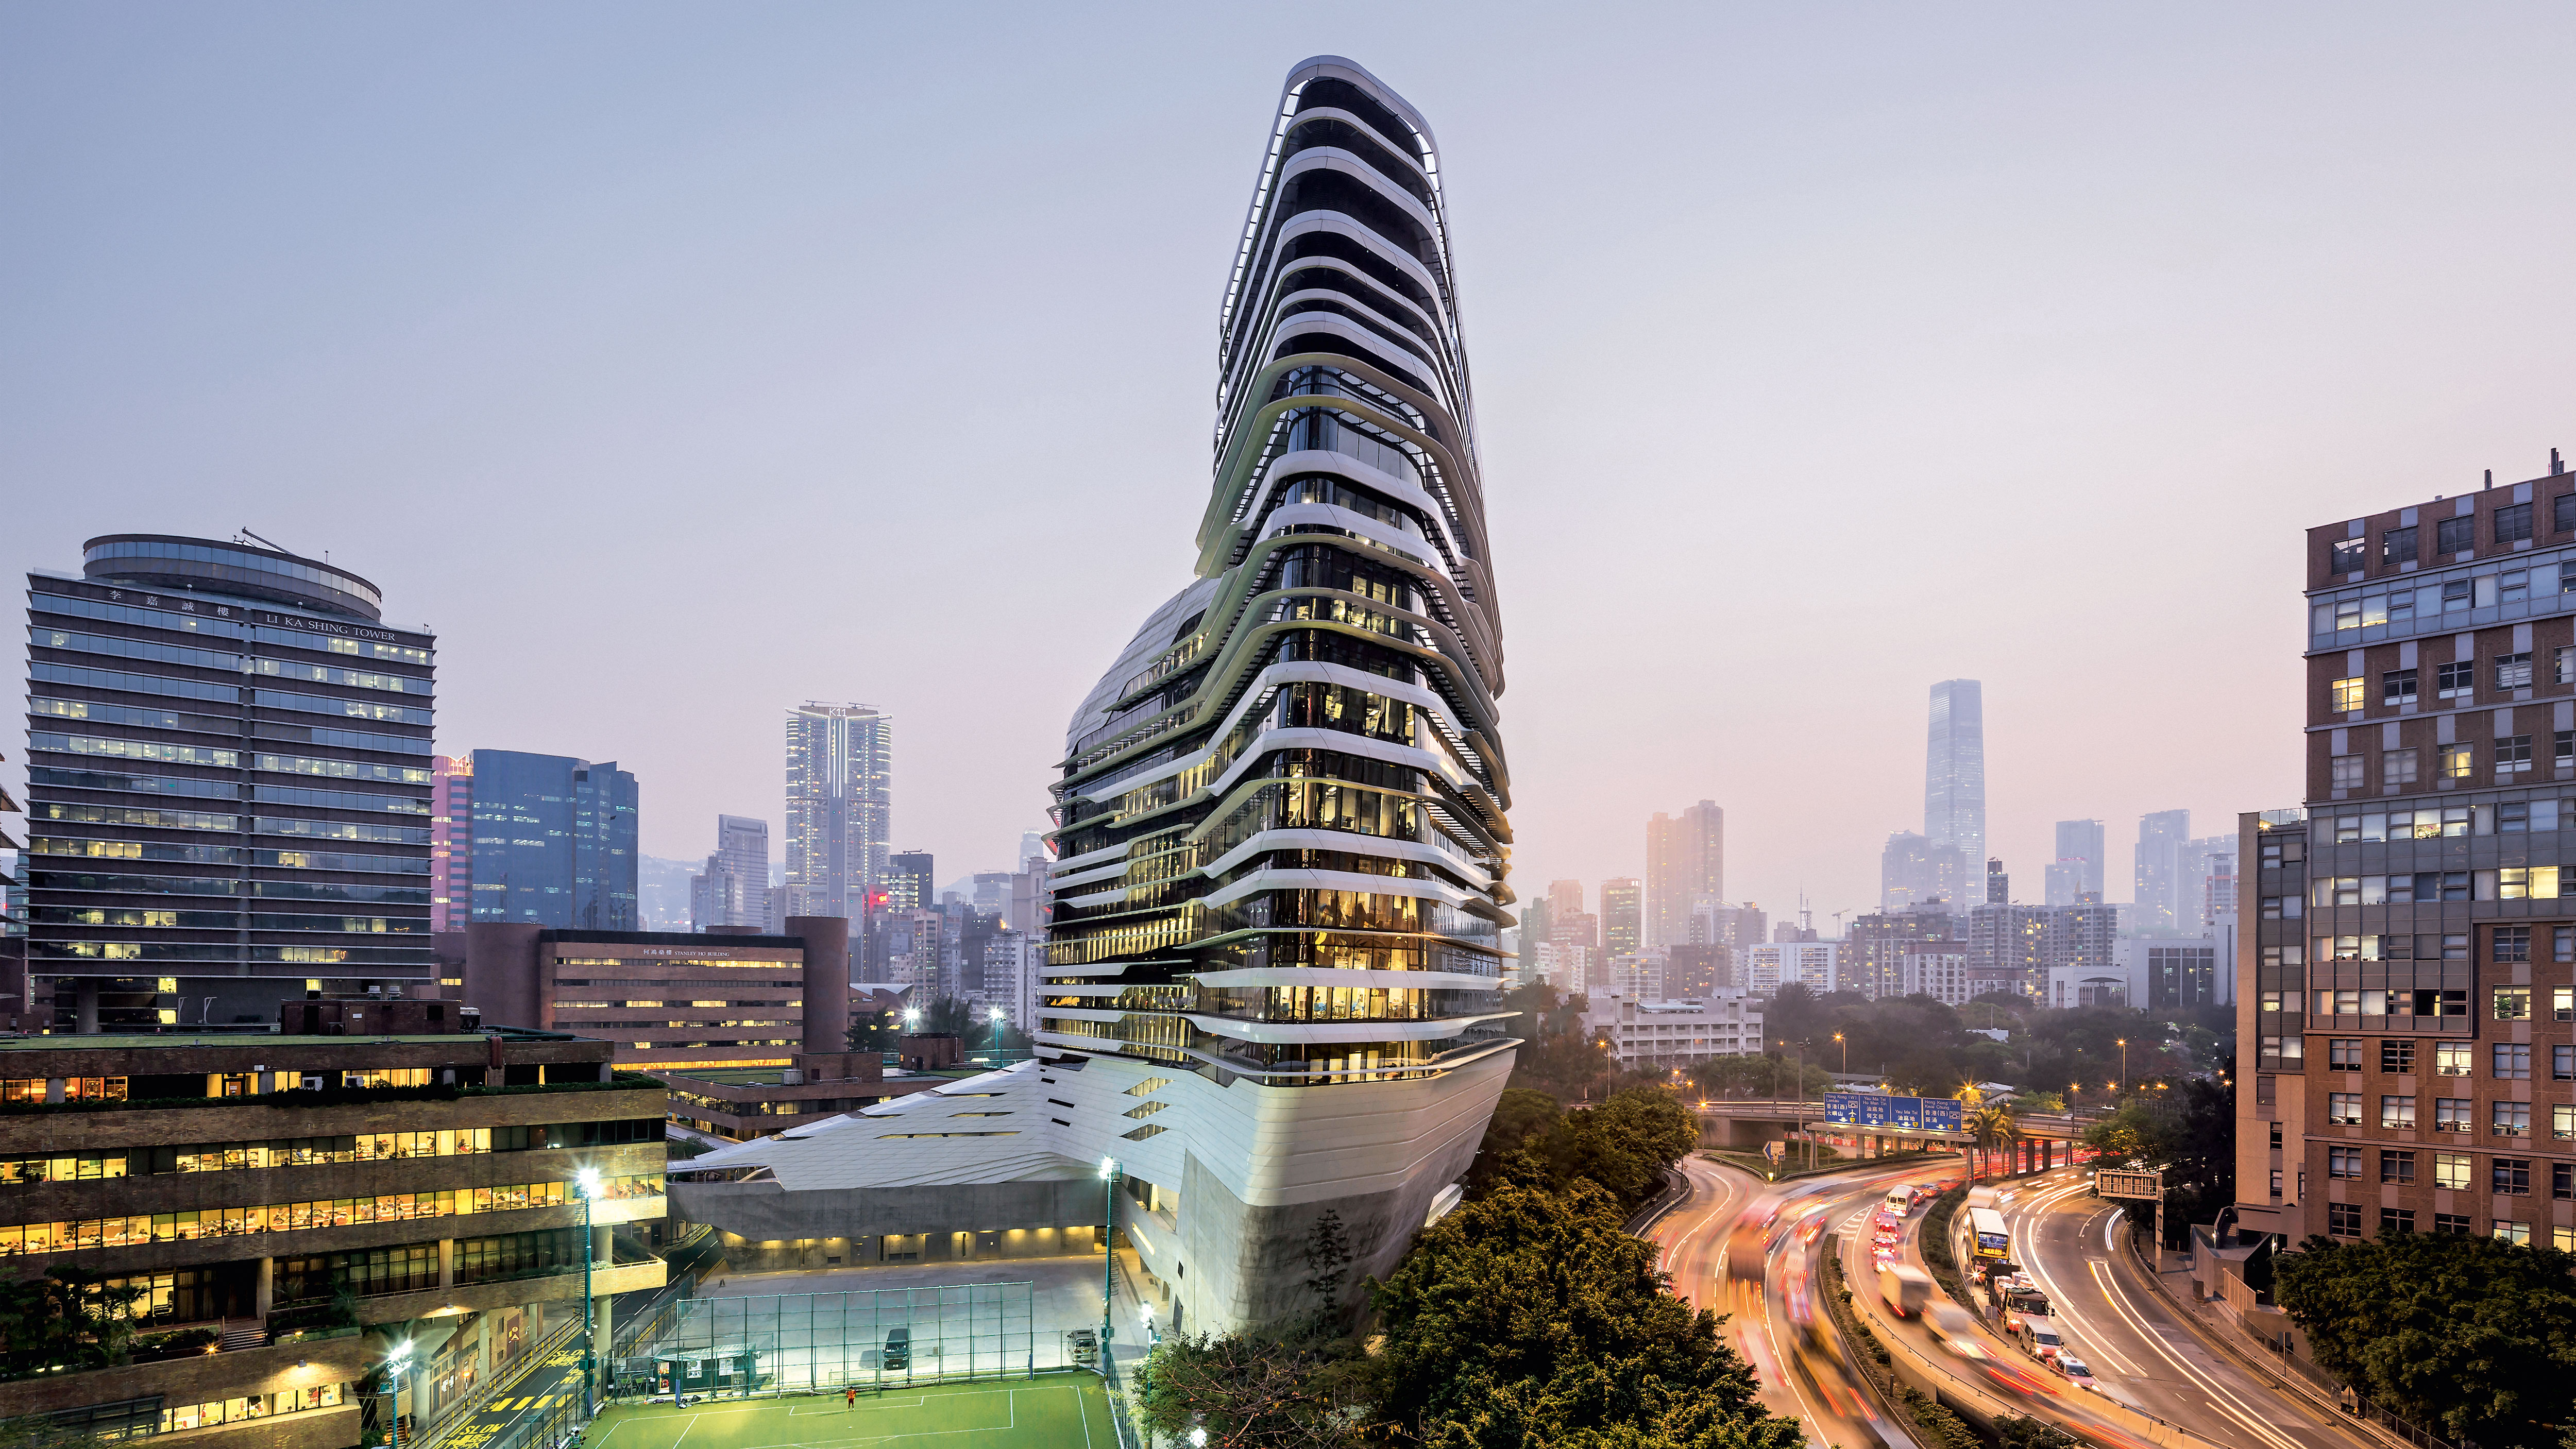 Jockey Club Innovation Tower - Zaha Hadid Architects | Arquitectura Viva